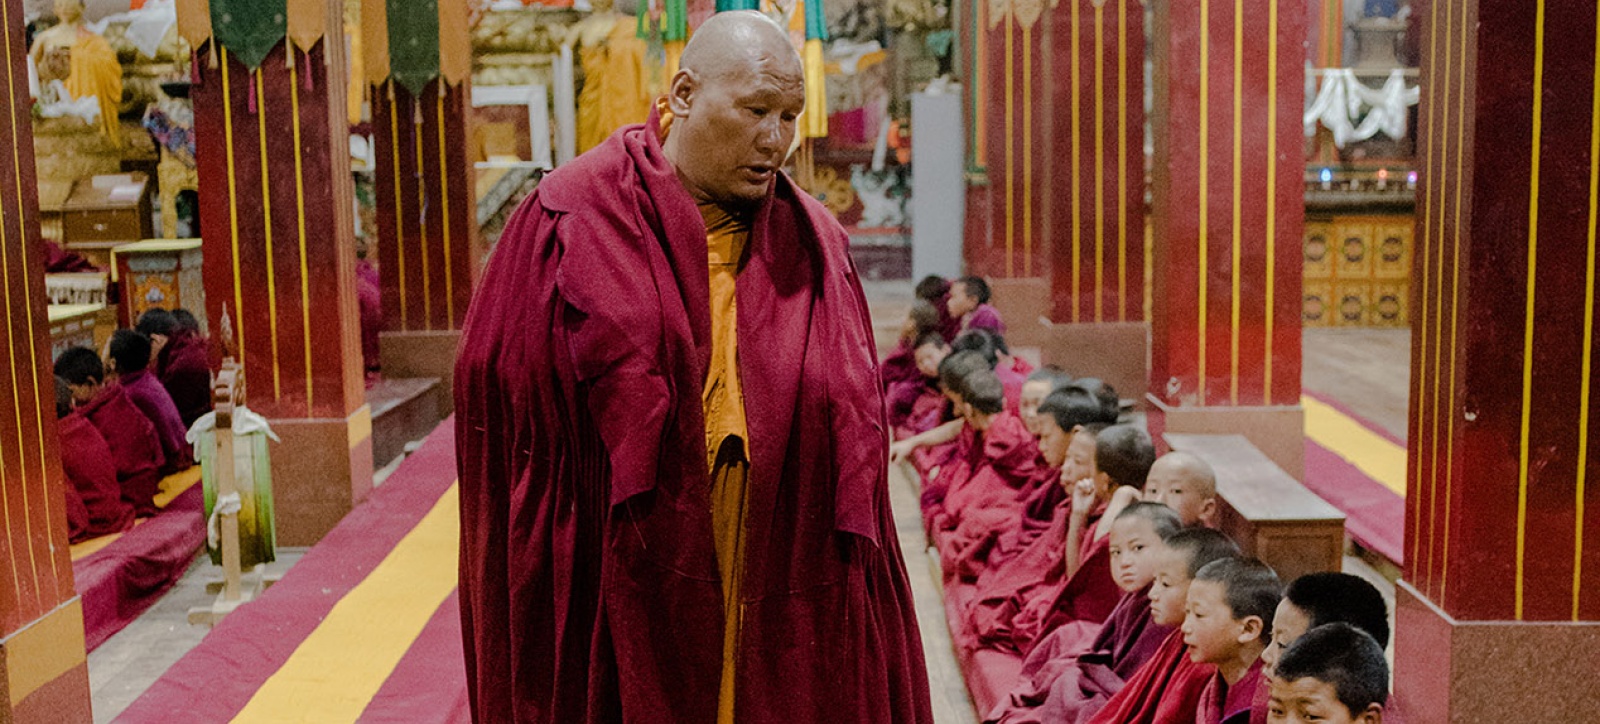 Ciné conférence: Himalaya méconnu, entre bhoutan et myanmar